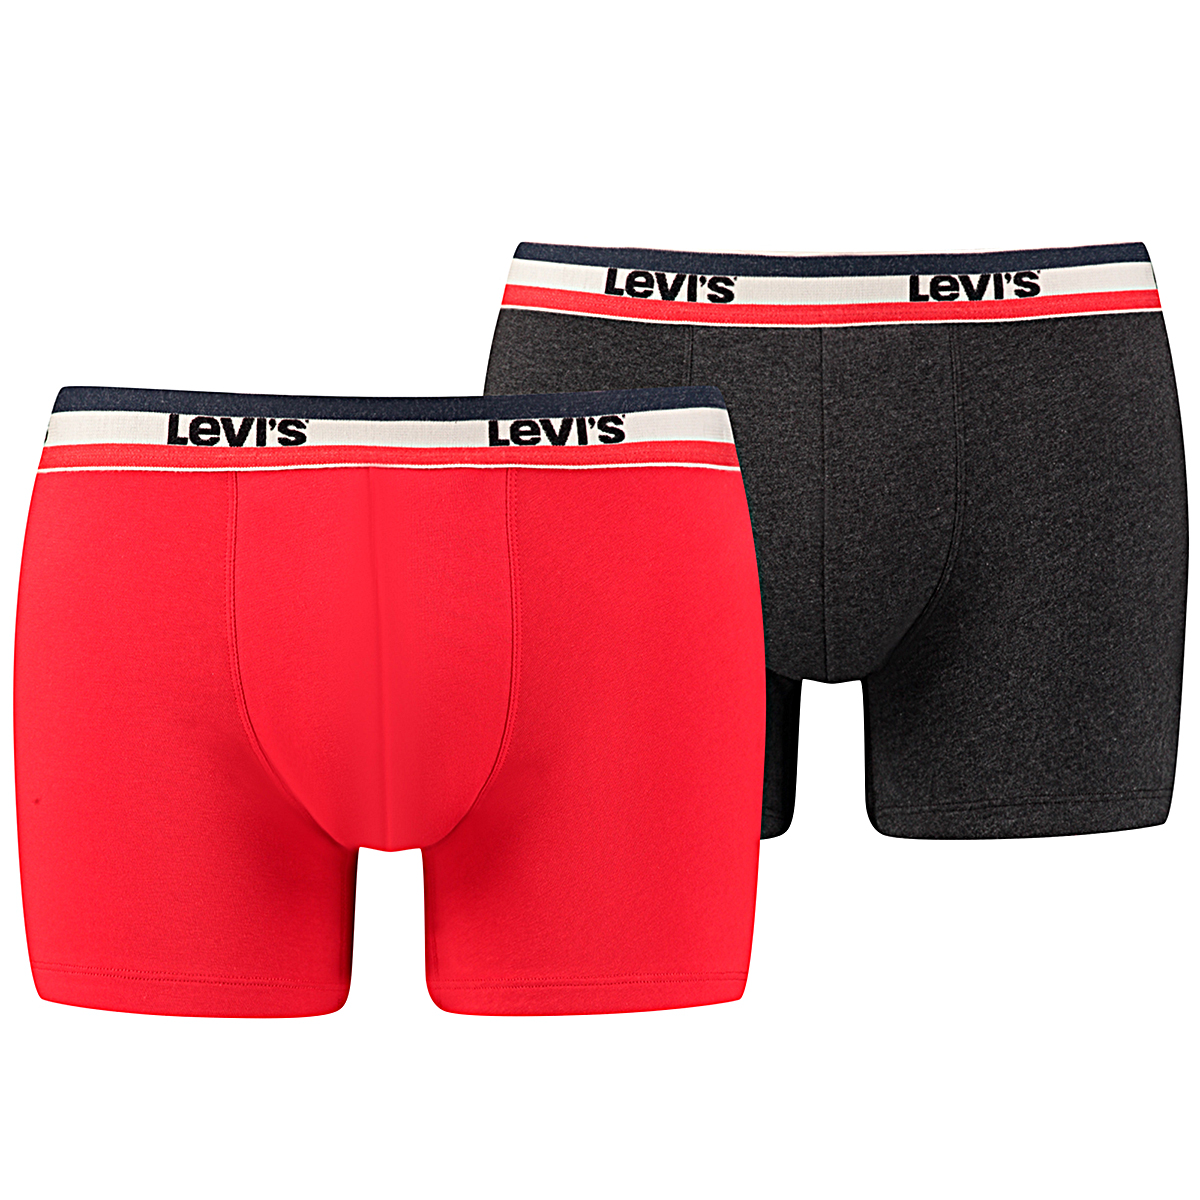 10 er Pack Levis Boxer Brief Boxershorts Men Herren Unterhose Pant Unterwäsche, Bekleidungsgröße:XXL, Farbe:786 - Red/Black